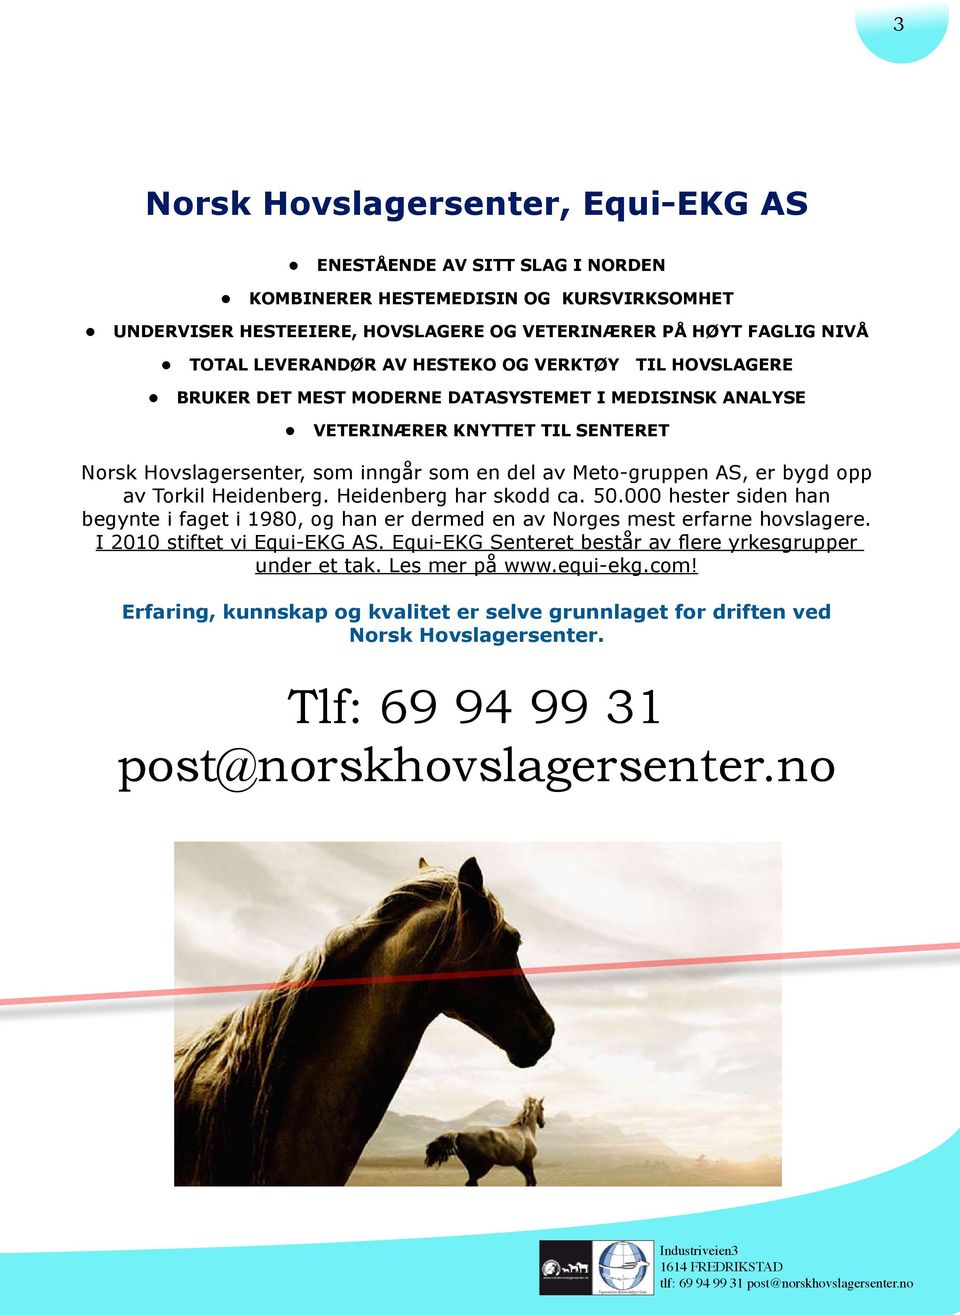 opp av Torkil Heidenberg. Heidenberg har skodd ca. 50.000 hester siden han begynte i faget i 1980, og han er dermed en av Norges mest erfarne hovslagere. I 2010 stiftet vi Equi-EKG AS.